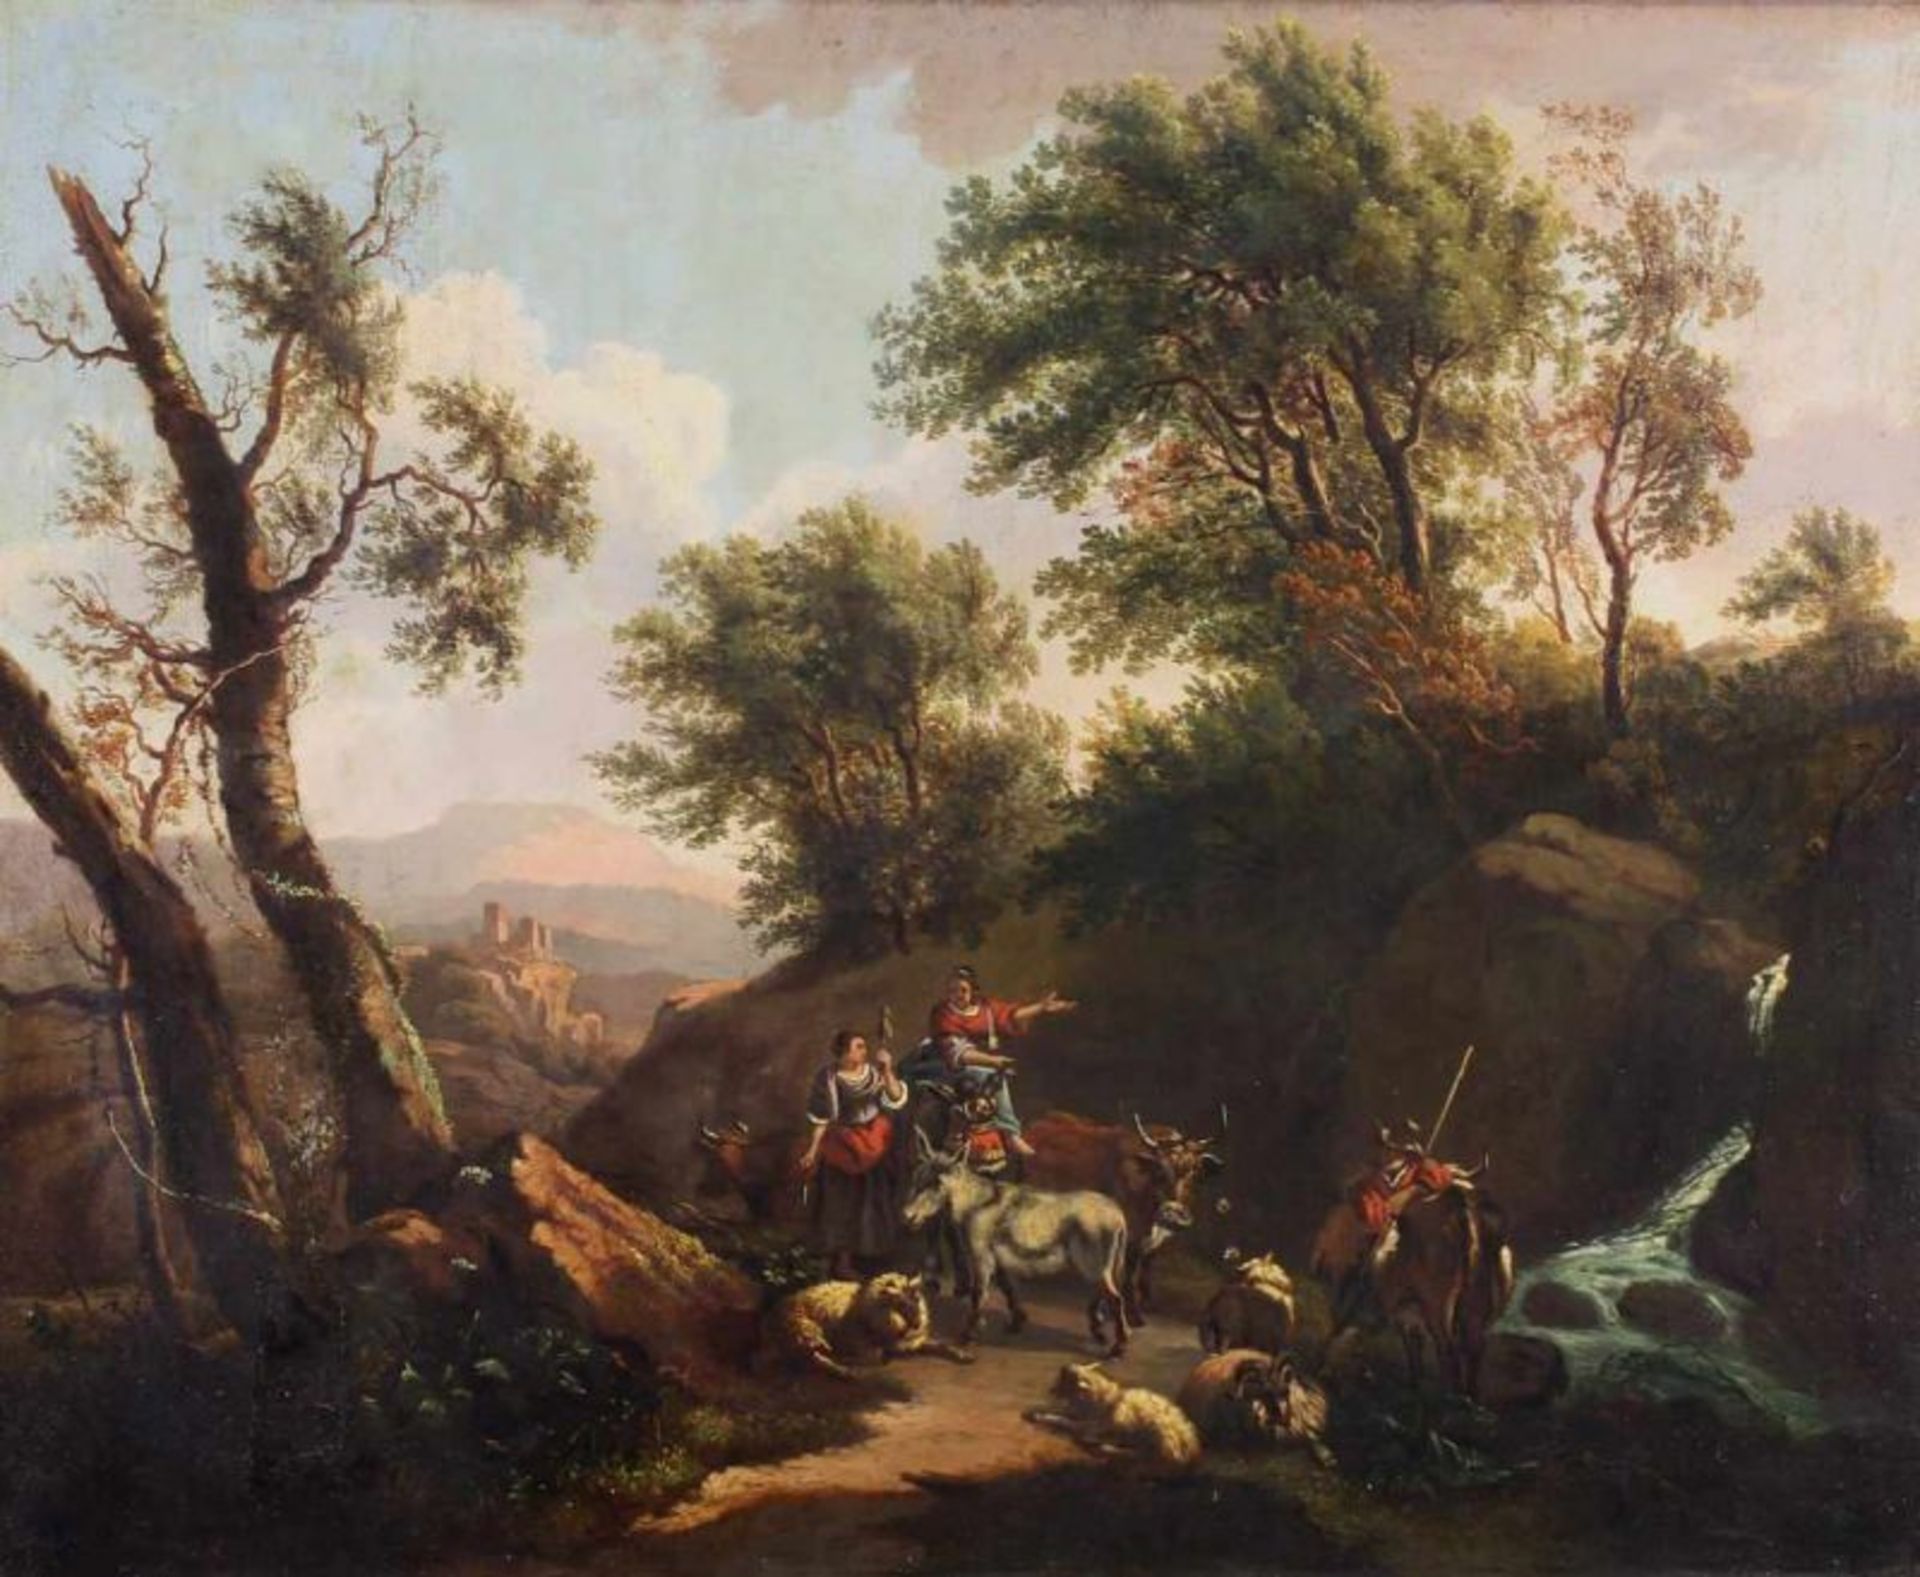 Unbekannter Maler (18./19. Jh.), "Rastende Hirten in südlicher Landschaft", Öl auf Leinwand,